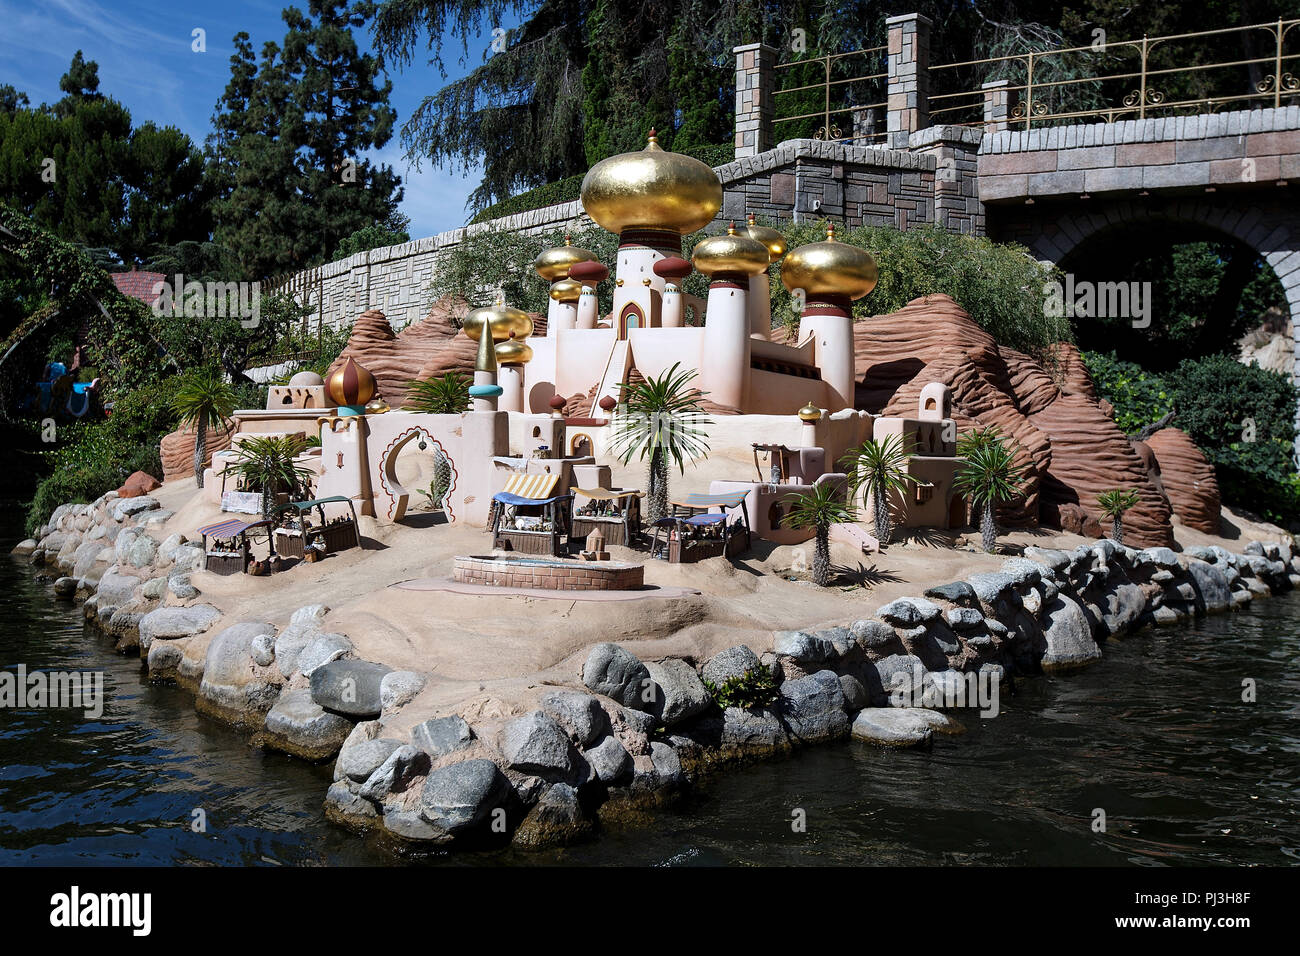 Palais du Sultan d'Aladdin afficher sur le Storybook Land Canal Boats ride, Parc Disneyland, Anaheim, Californie, États-Unis d'Amérique Banque D'Images